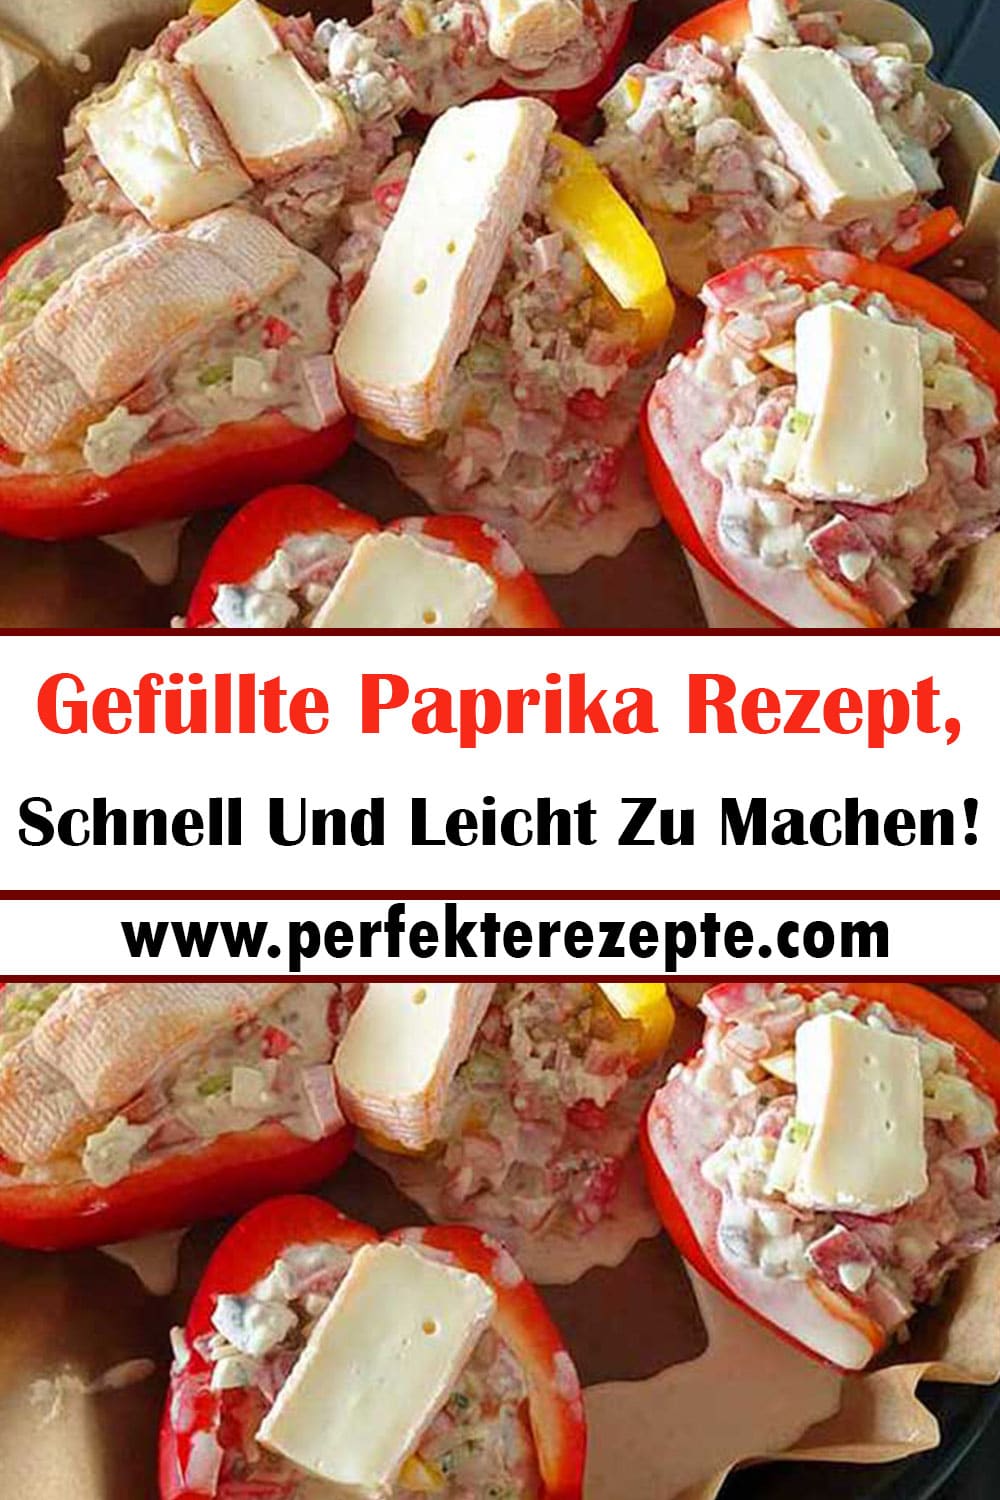 Gefüllte Paprika Rezept, Schnell Und Leicht Zu Machen!